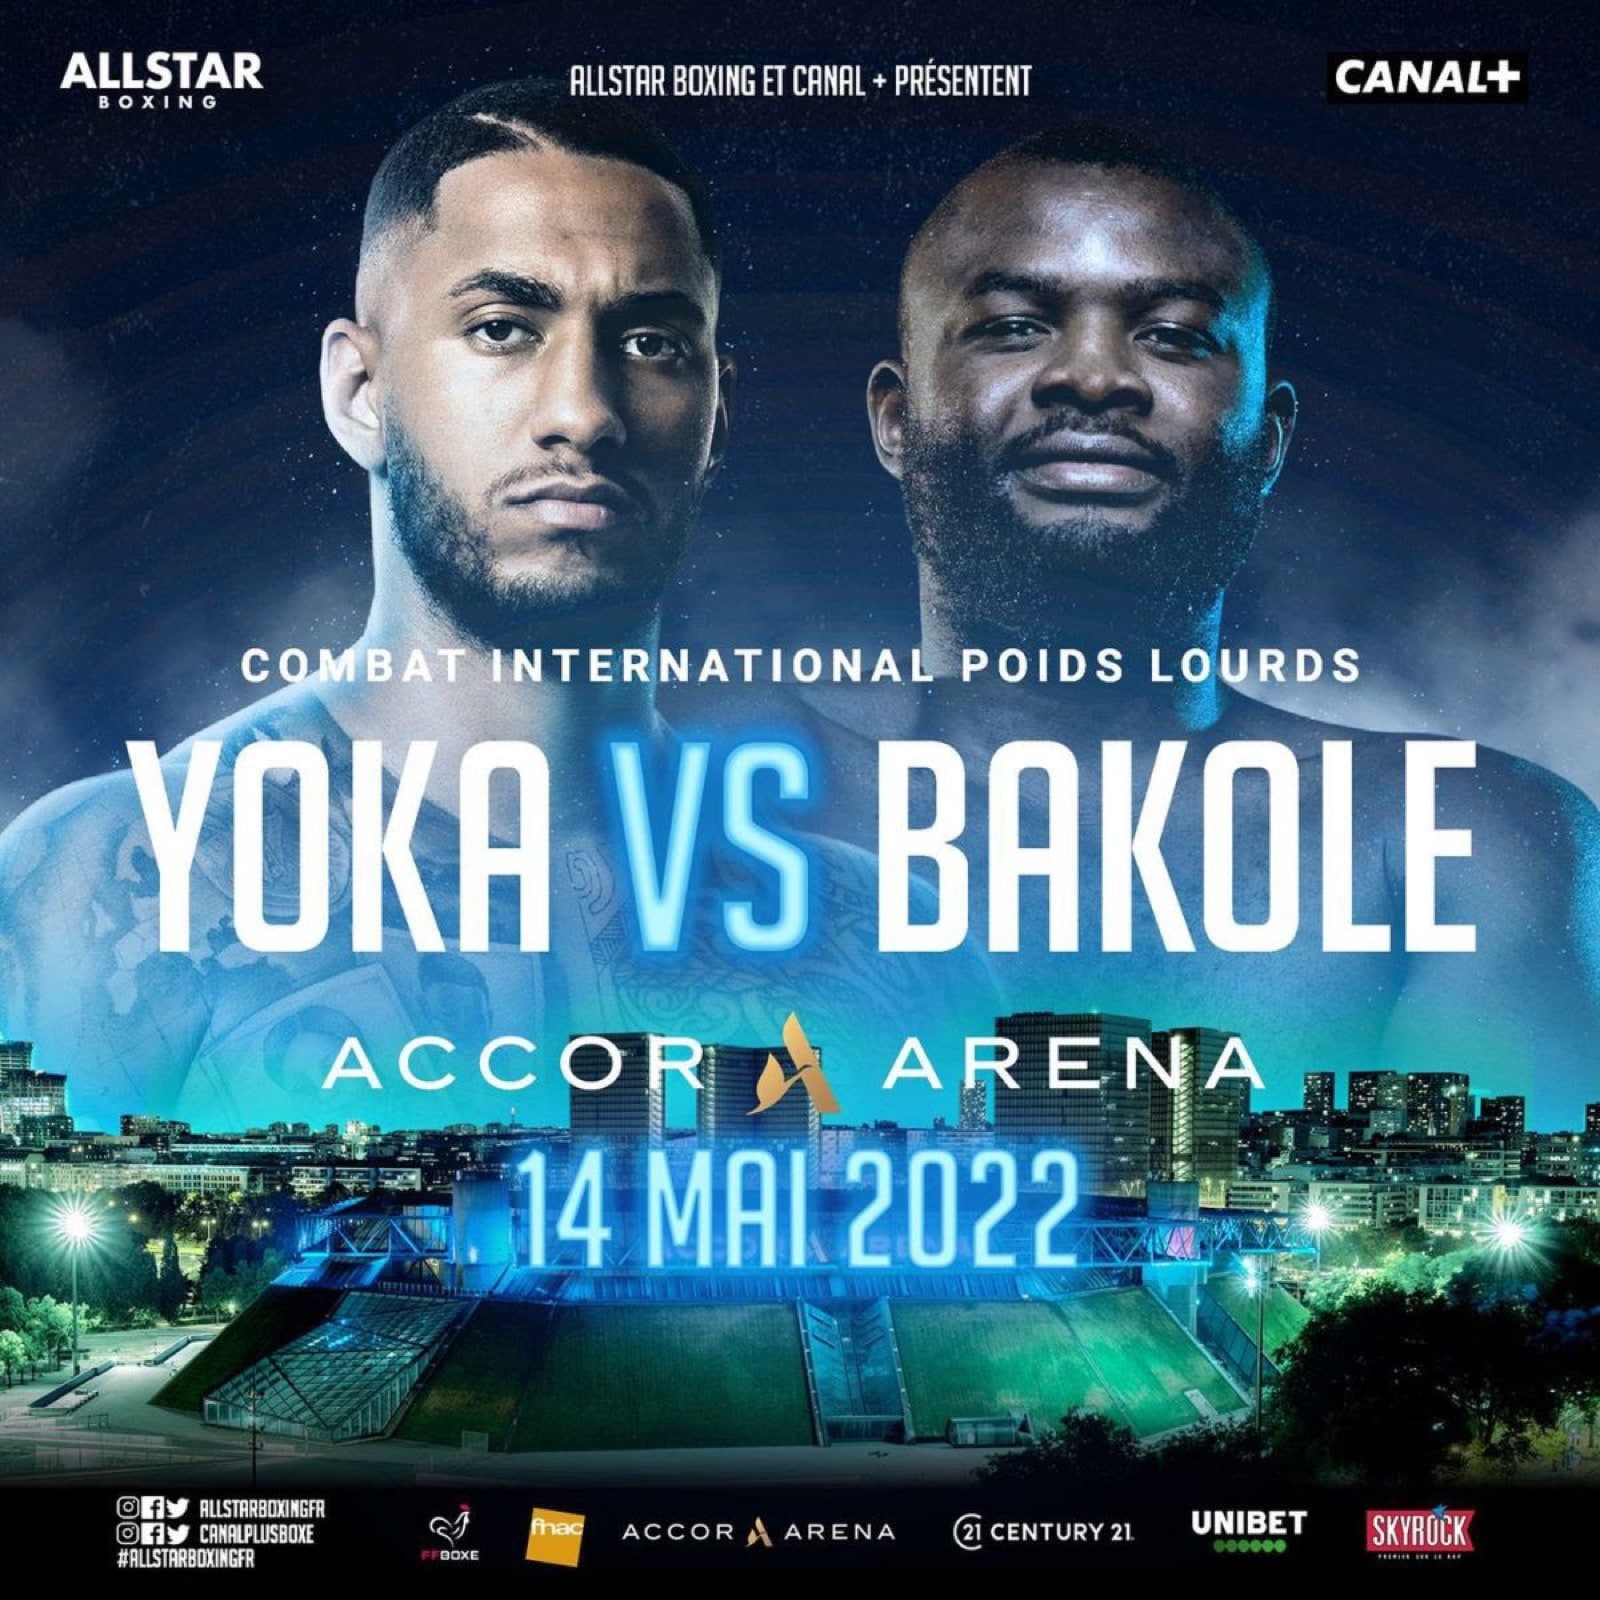 Yoka vs Bakole - ESPN+ - May 14 - 3 pm ET